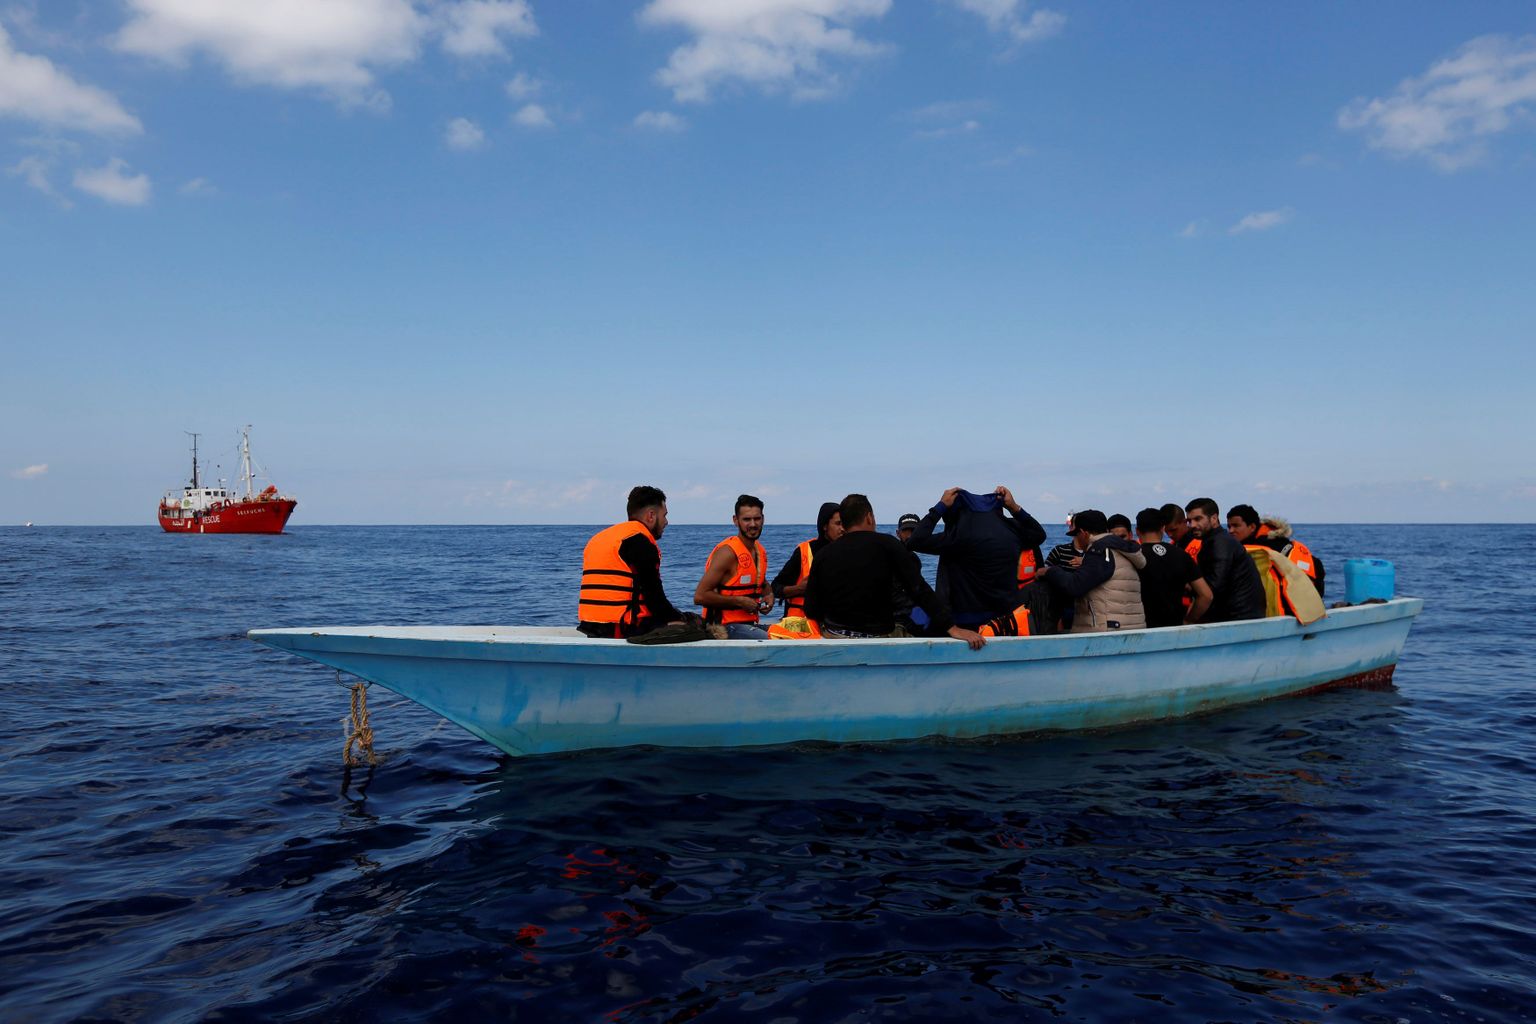 Migrandid teel Liibüast üle Vahemere Euroopasse.